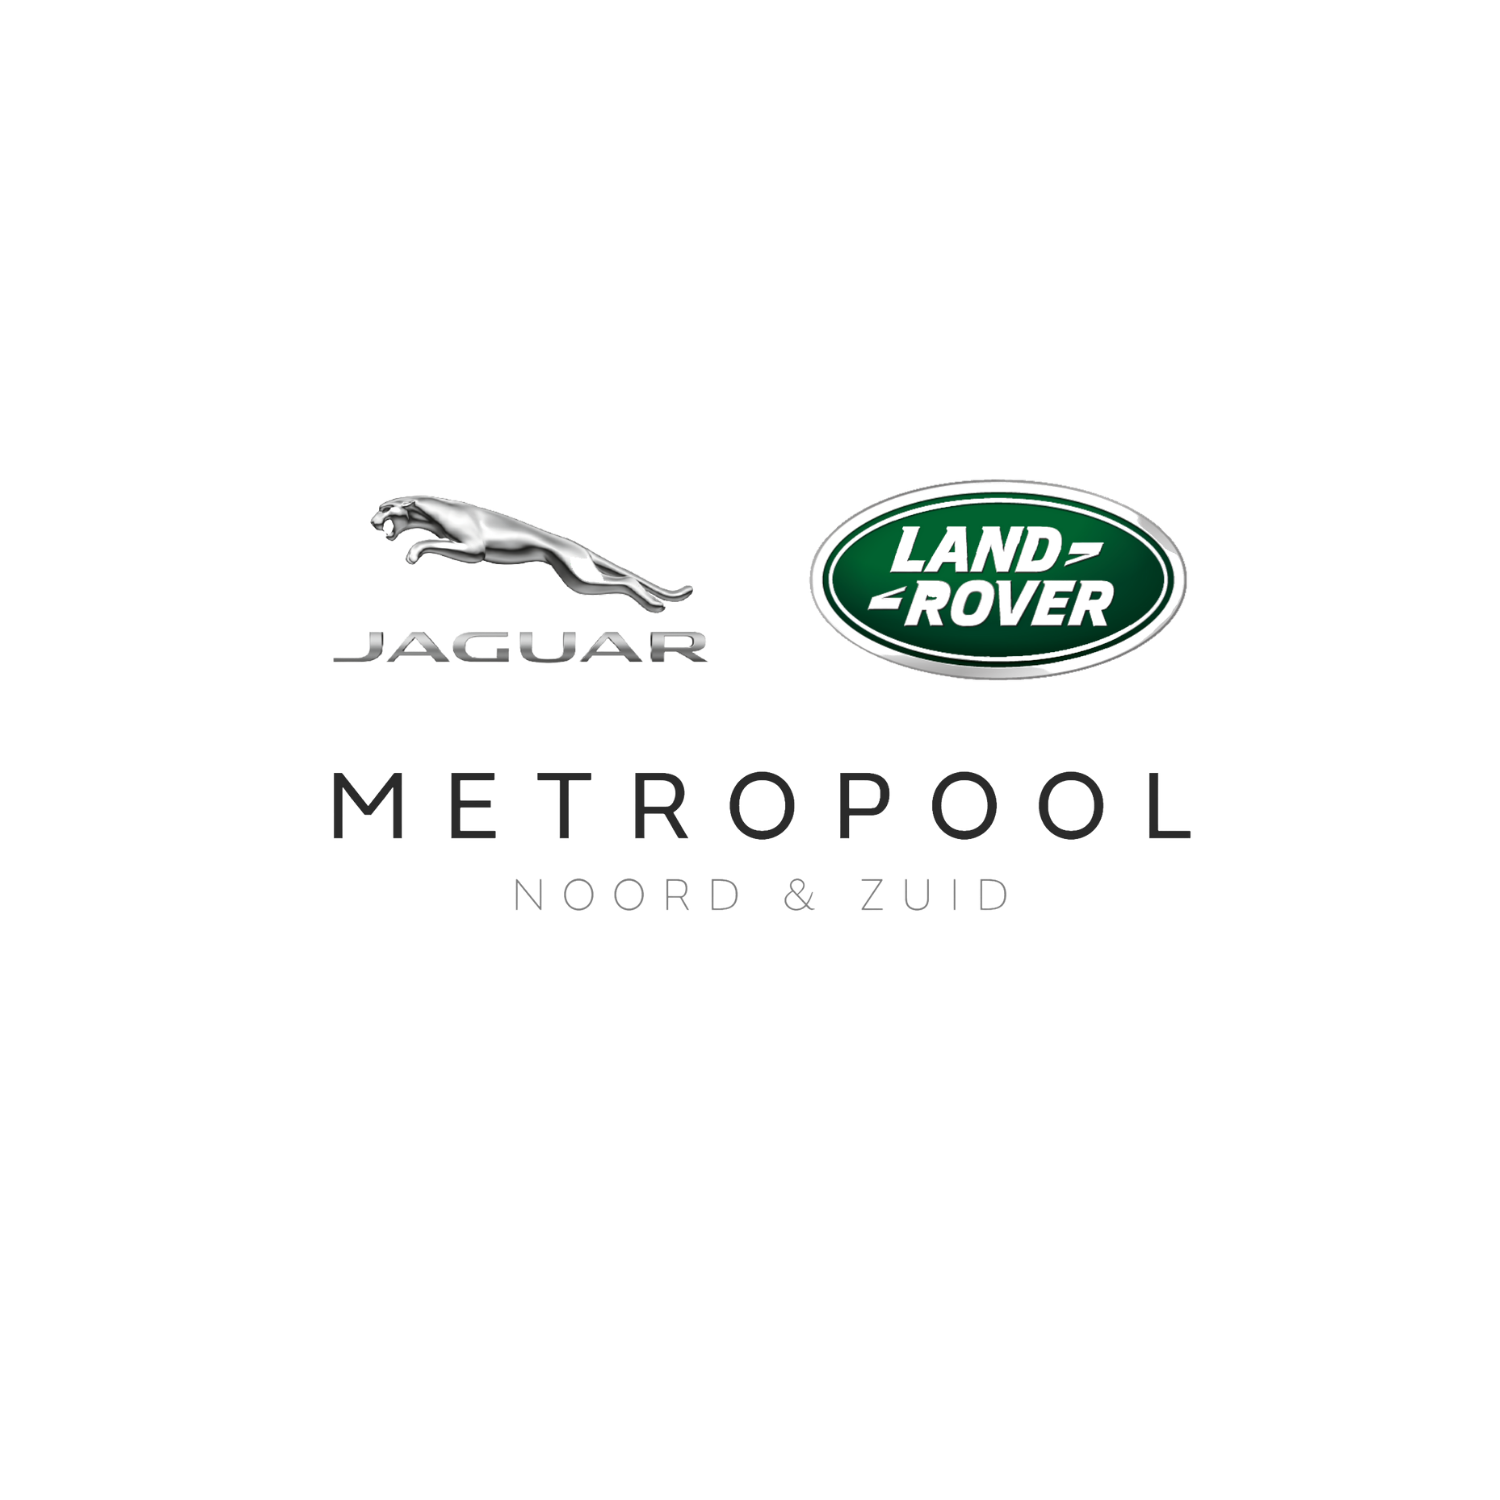 Jaguar Land Rover Metropool